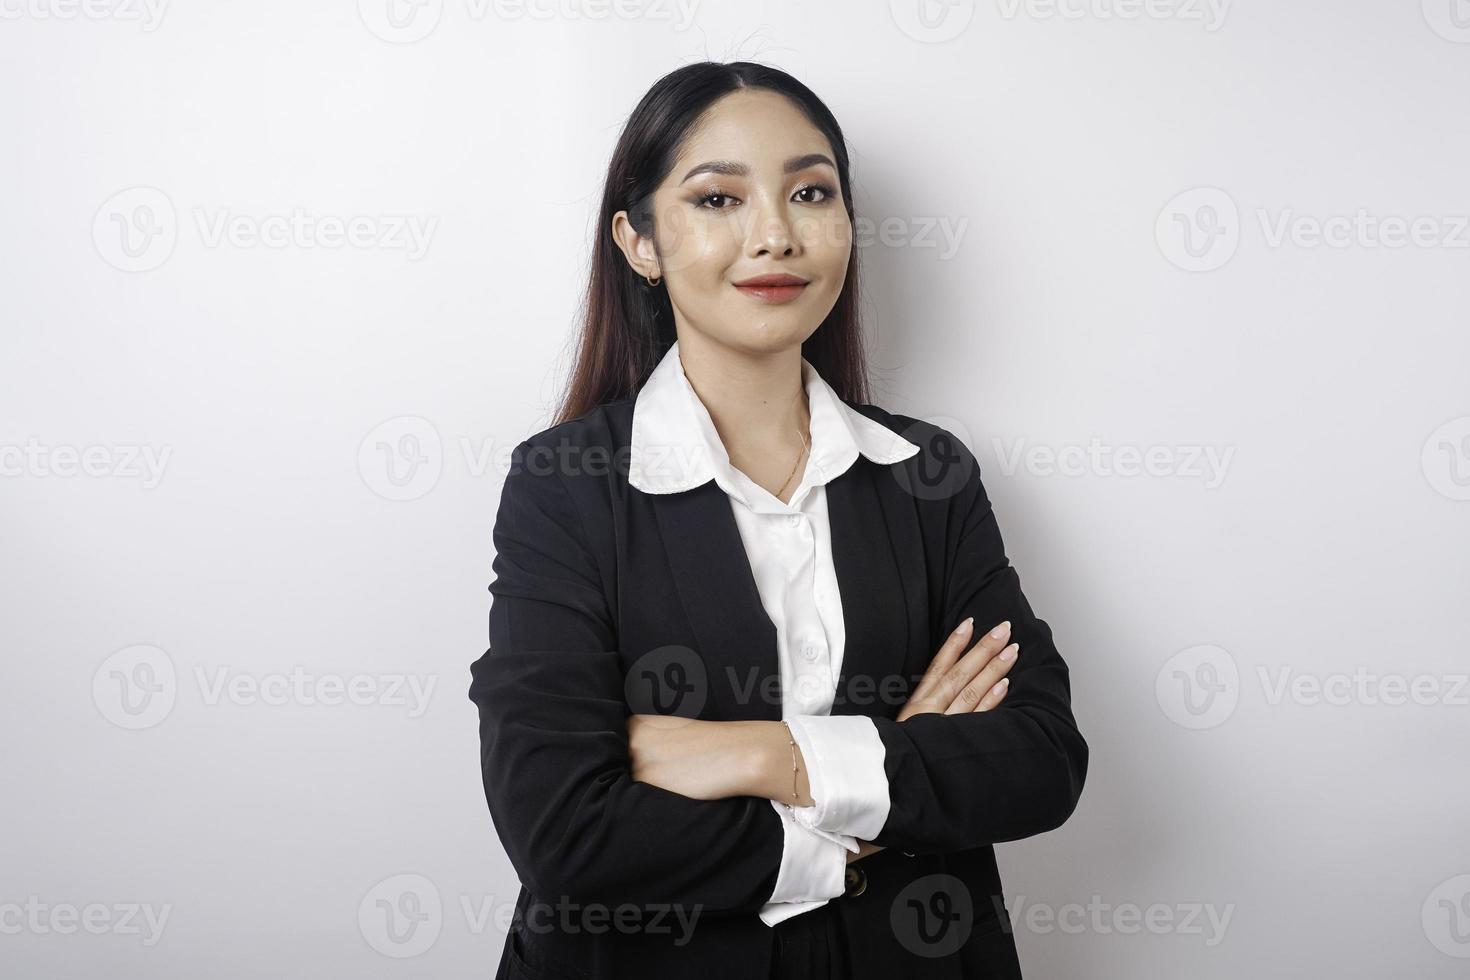 Porträt einer selbstbewusst lächelnden asiatischen Chefin mit schwarzem Anzug, die mit verschränkten Armen steht und isoliert auf weißem Hintergrund in die Kamera schaut foto